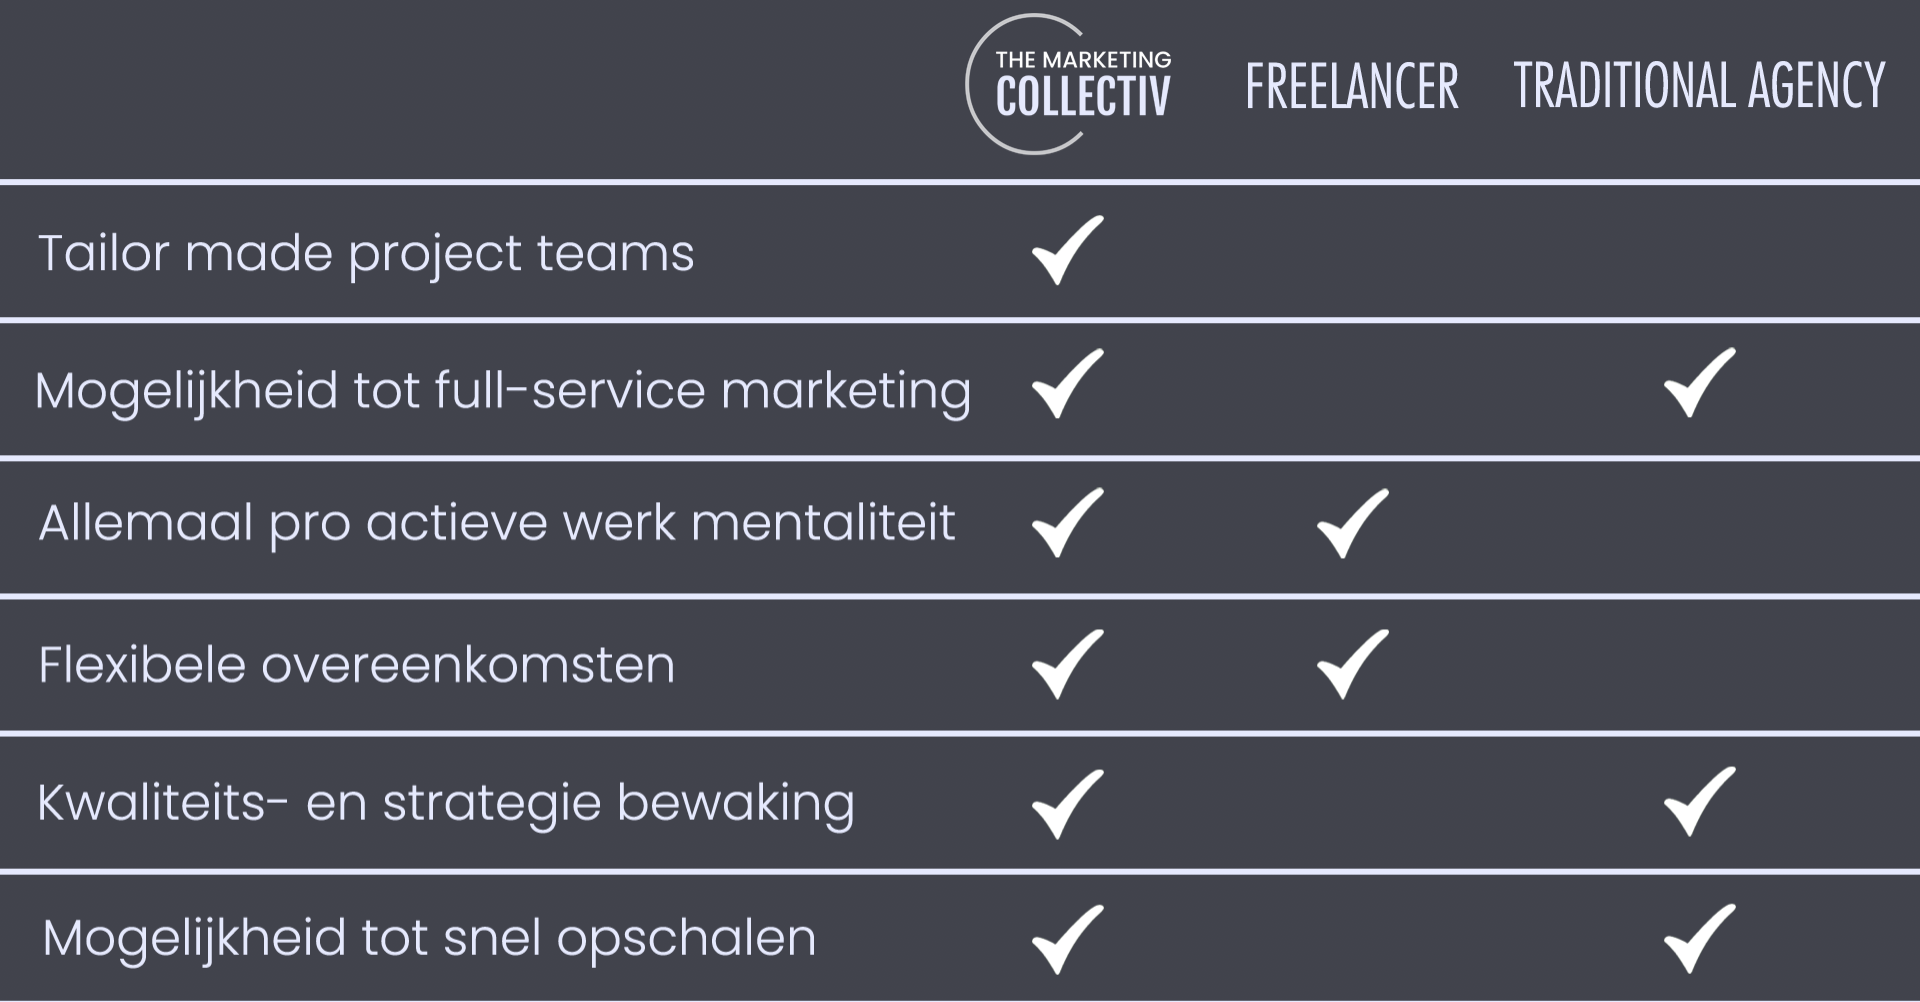 TheMarketingCollectiv-Freelance-MarketingAgency-NL